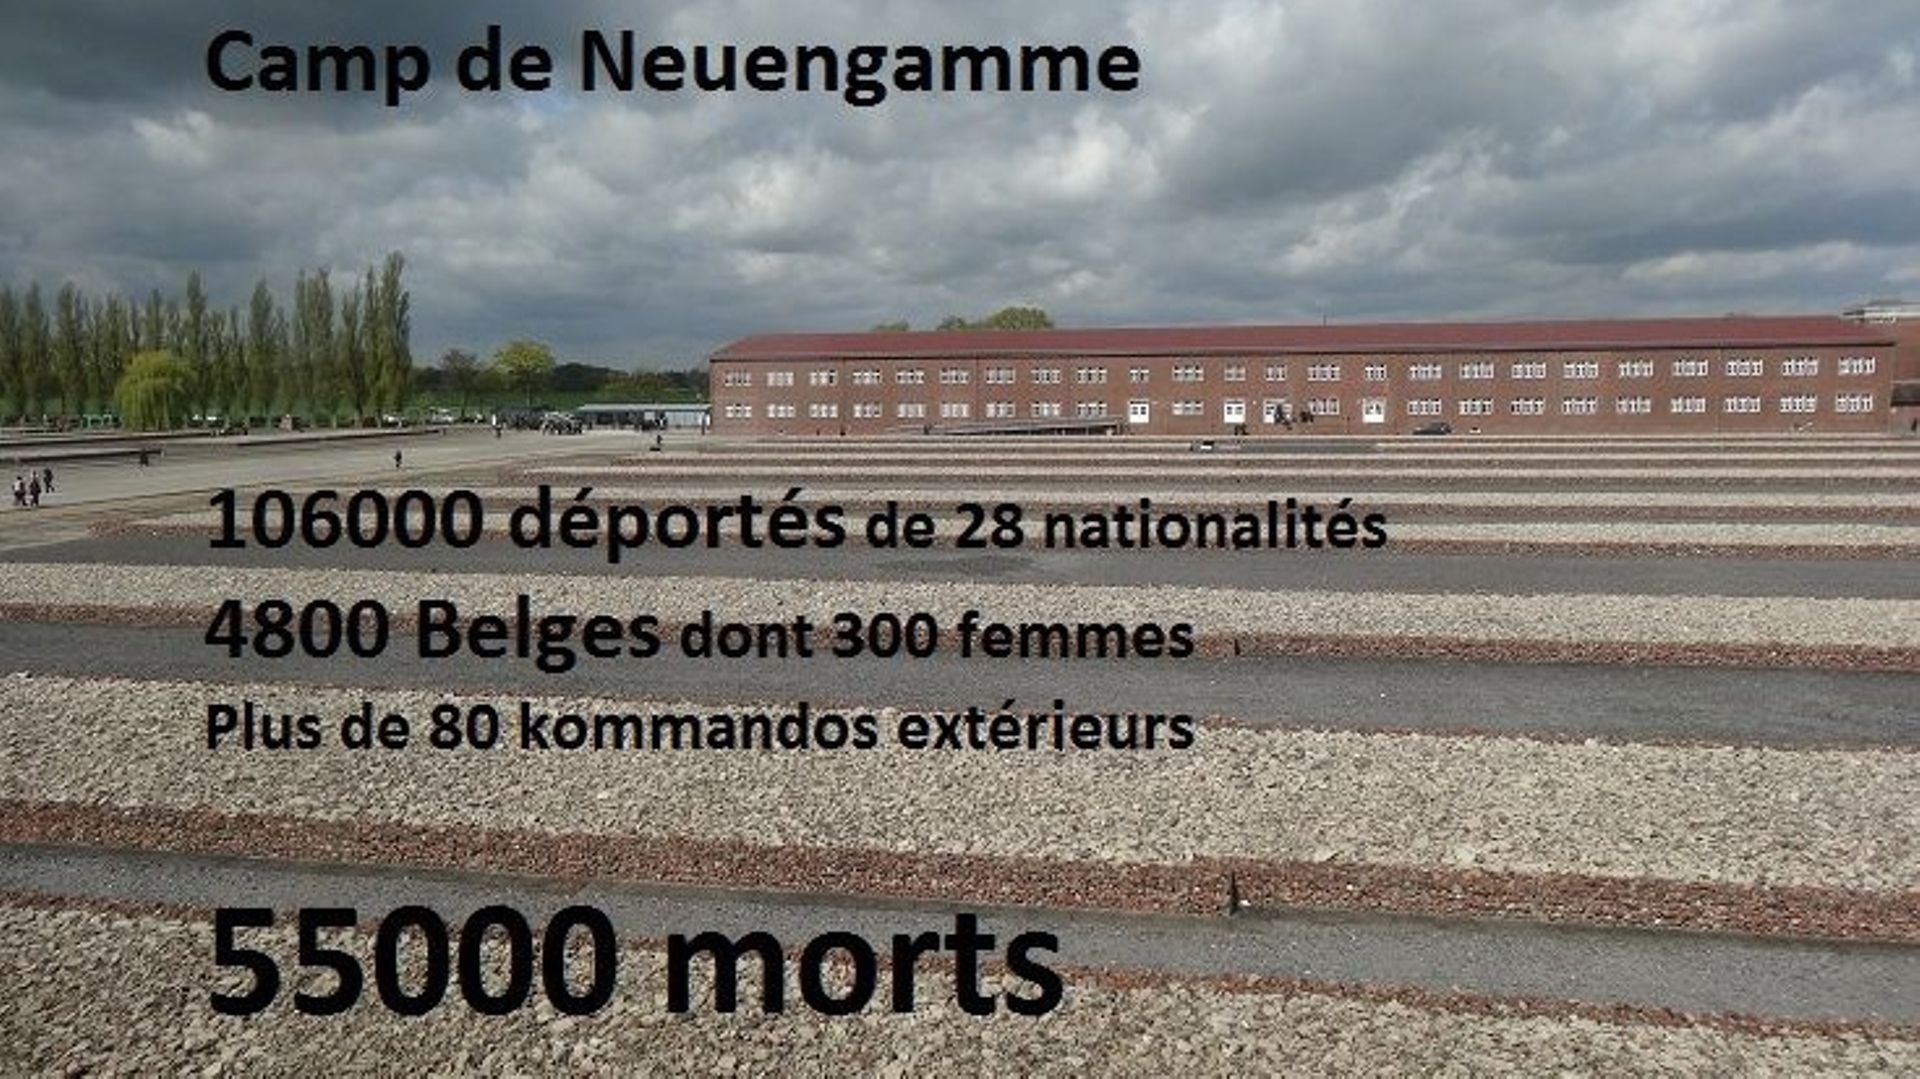 Camp de Neuengamme: les chiffres